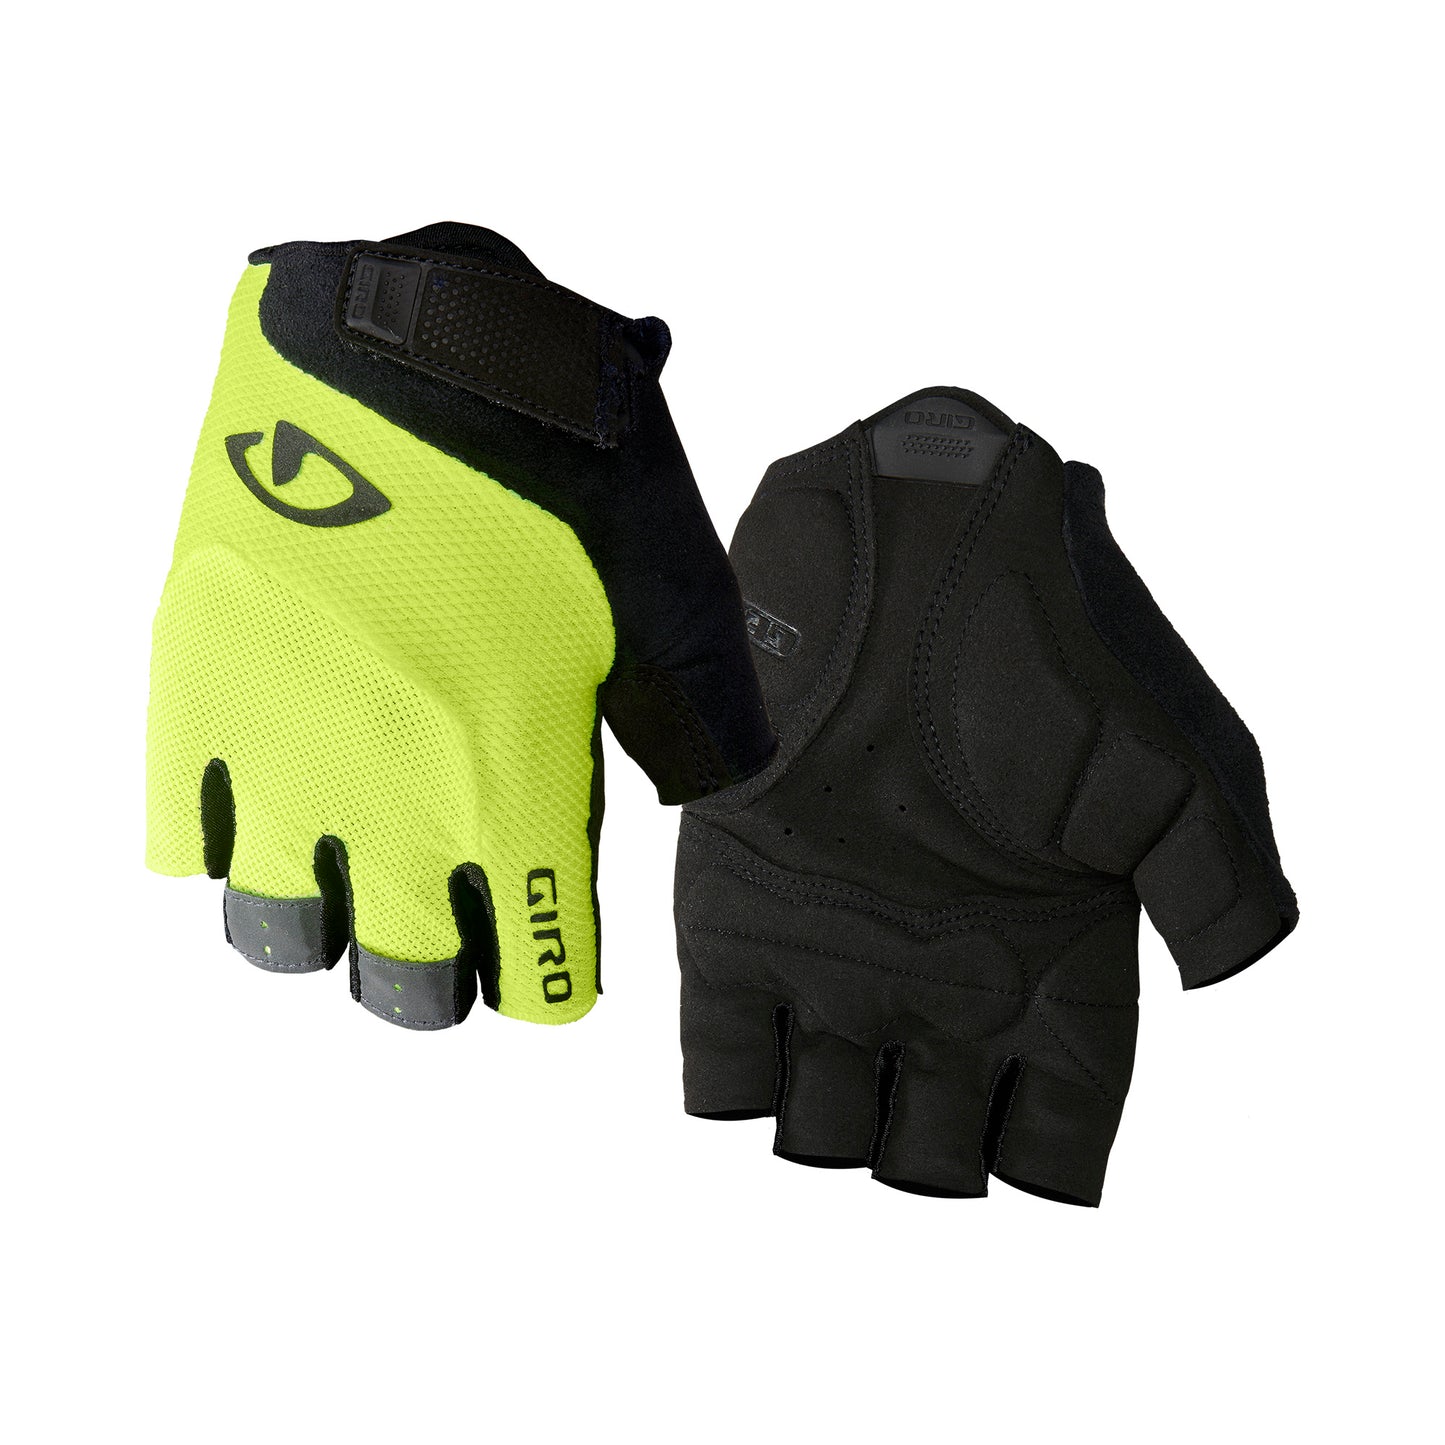 Giro Men's Bravo Gel Glove Highlight Yellow Bike Gloves